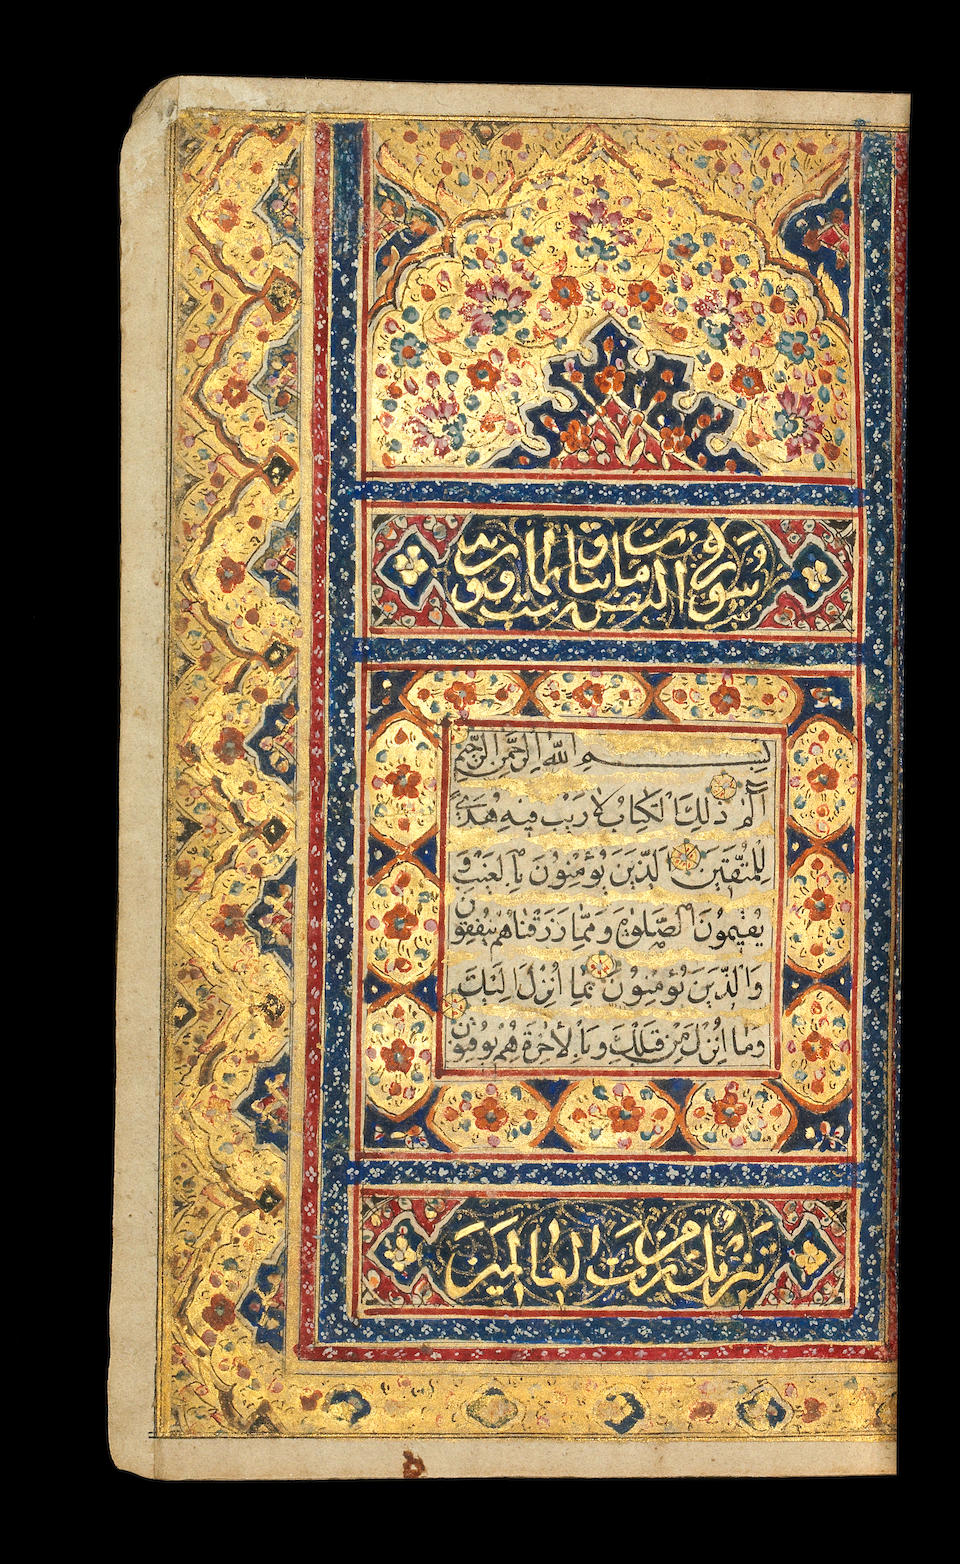 A small illuminated Qur'an, copied by Ibn Muhammad Taqi Muhammad Kazem al-Shirazi Qajar Persia, dated 15th Jumada al-Awwal 1216/22nd September 1801